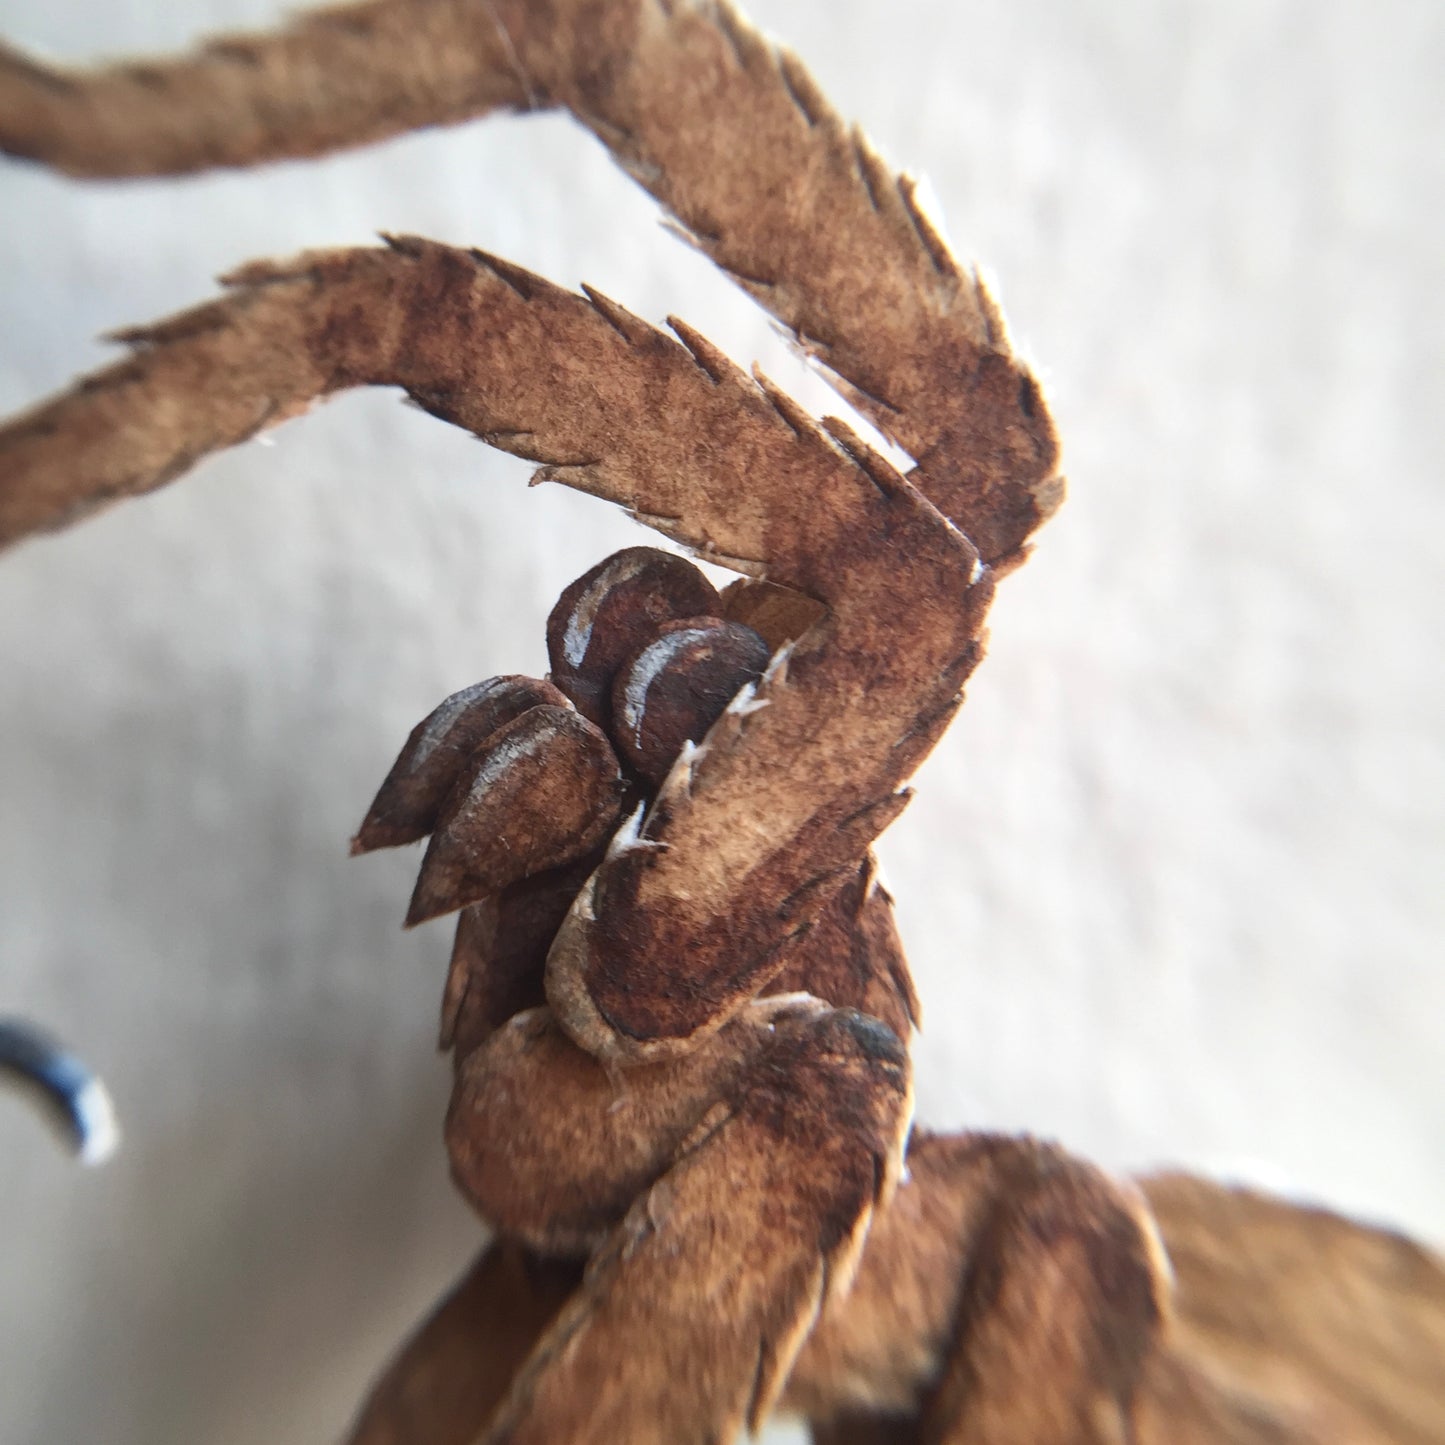 Tarantula Hawk Wasp vs Huntsman Spider